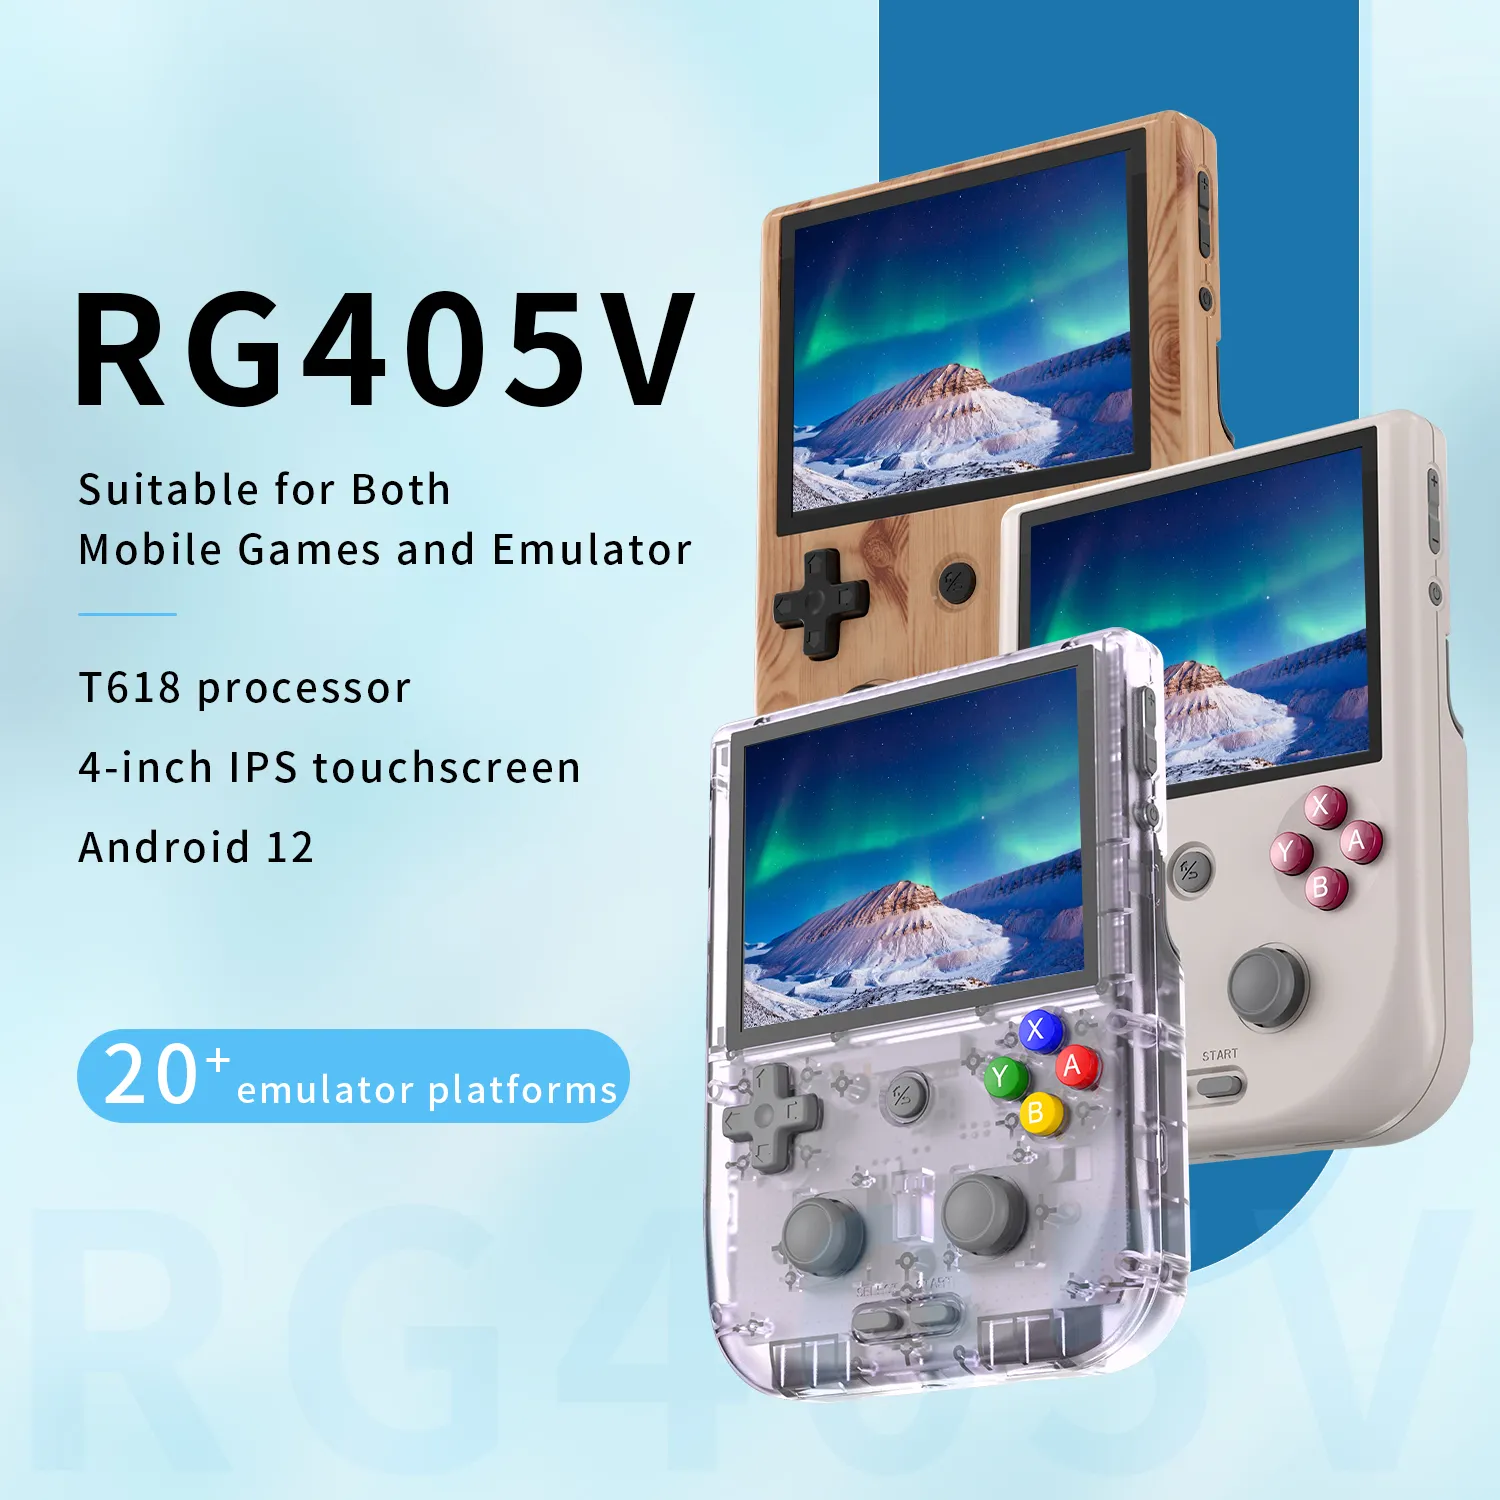 Rg405v Console de jogos portátil para download, joystick inteligente com tela sensível ao toque Ips de 4 polegadas, jogo embutido